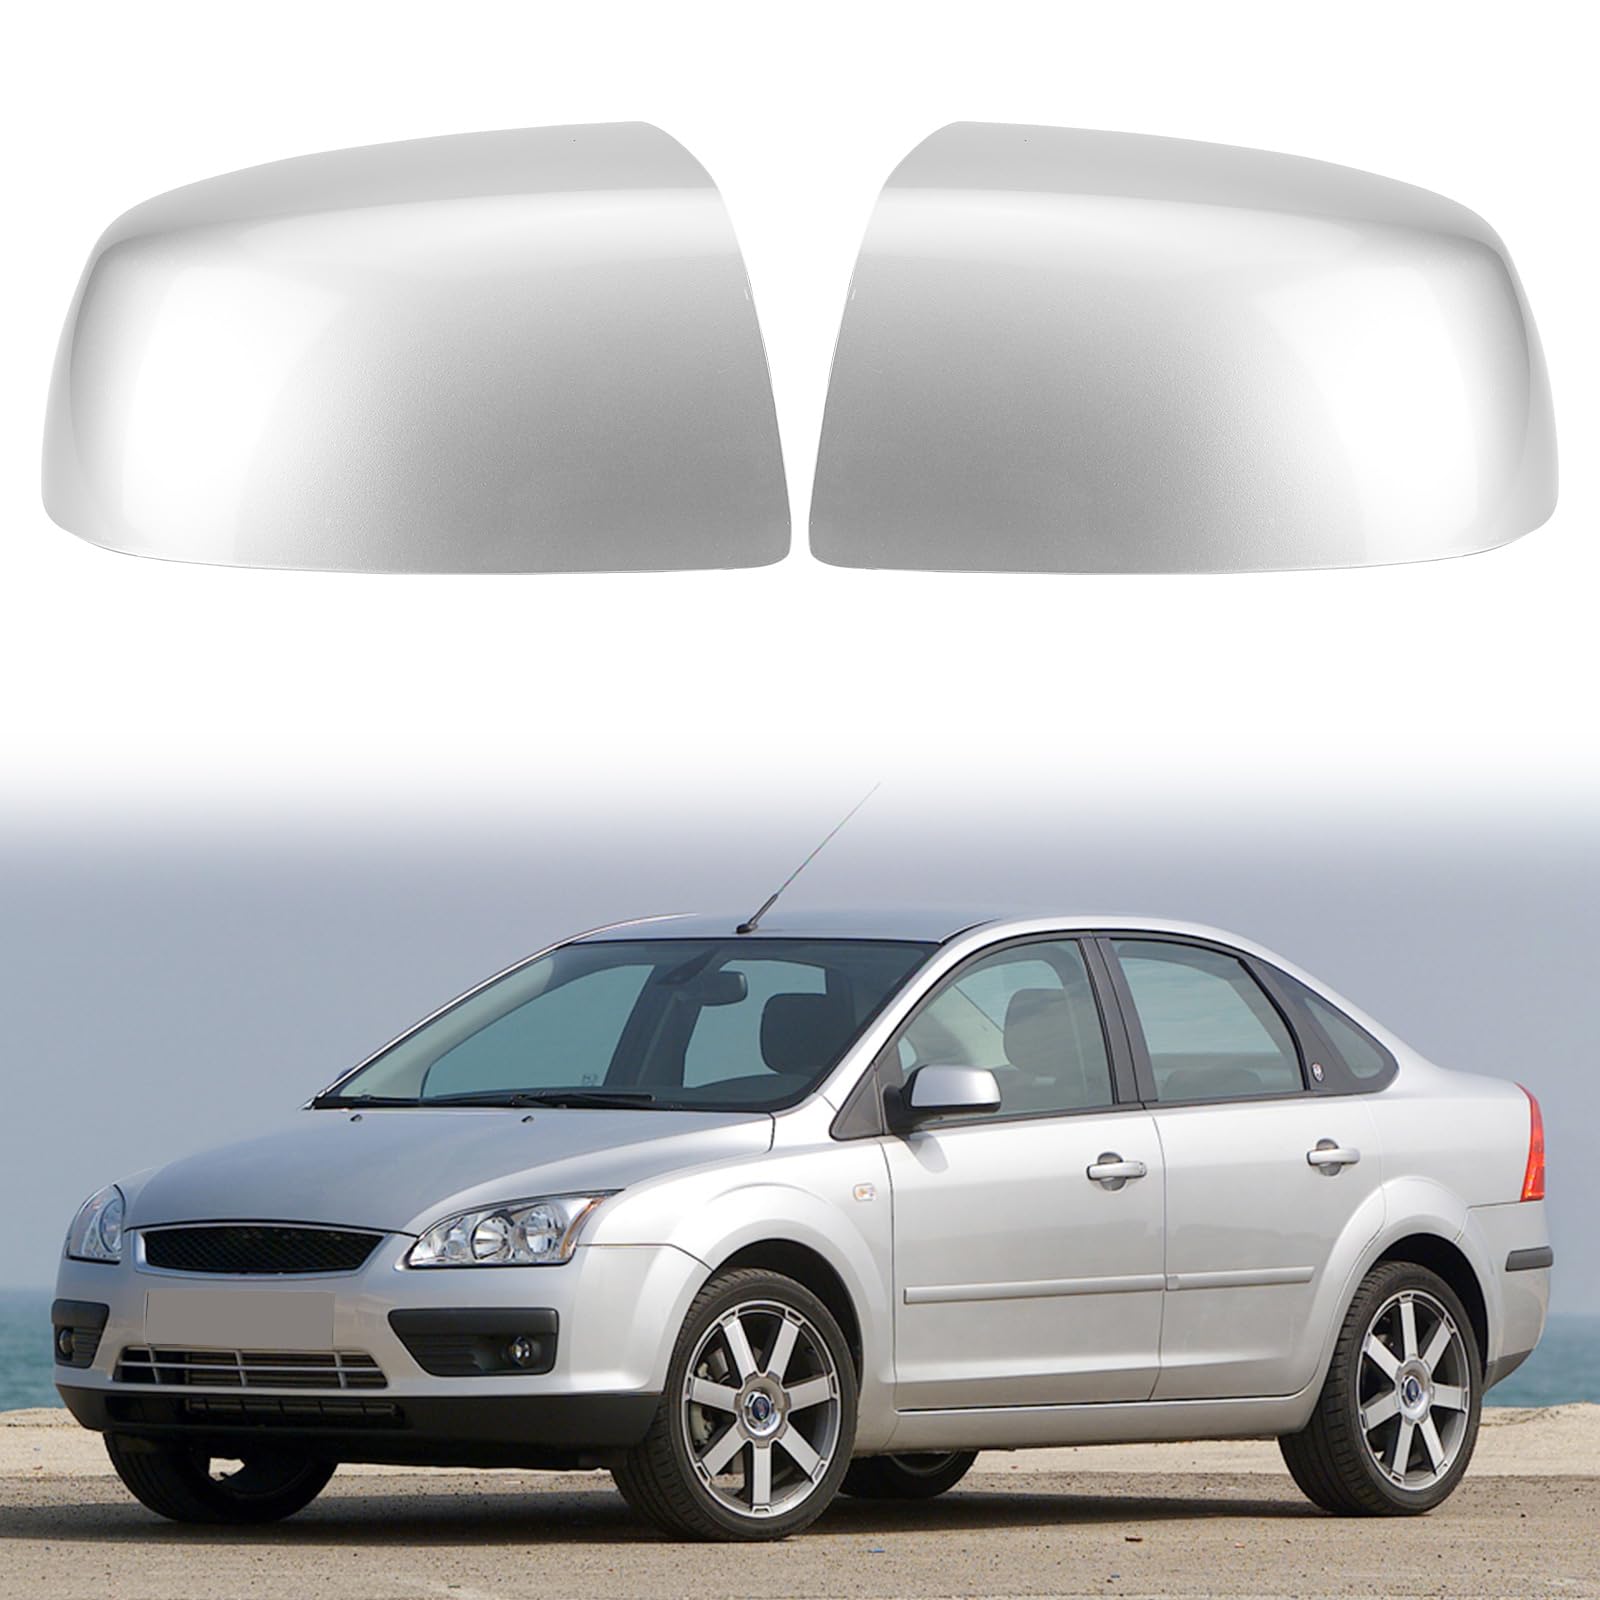 Auto Spiegelkappen, 1 Paar Auto Tür Außenspiegelkappe Rückspiegelkappe Seitenspiegel Abdeckungen Kompatibel mit Ford Focus mk2 (2005-2007) (Silber) von WingFly